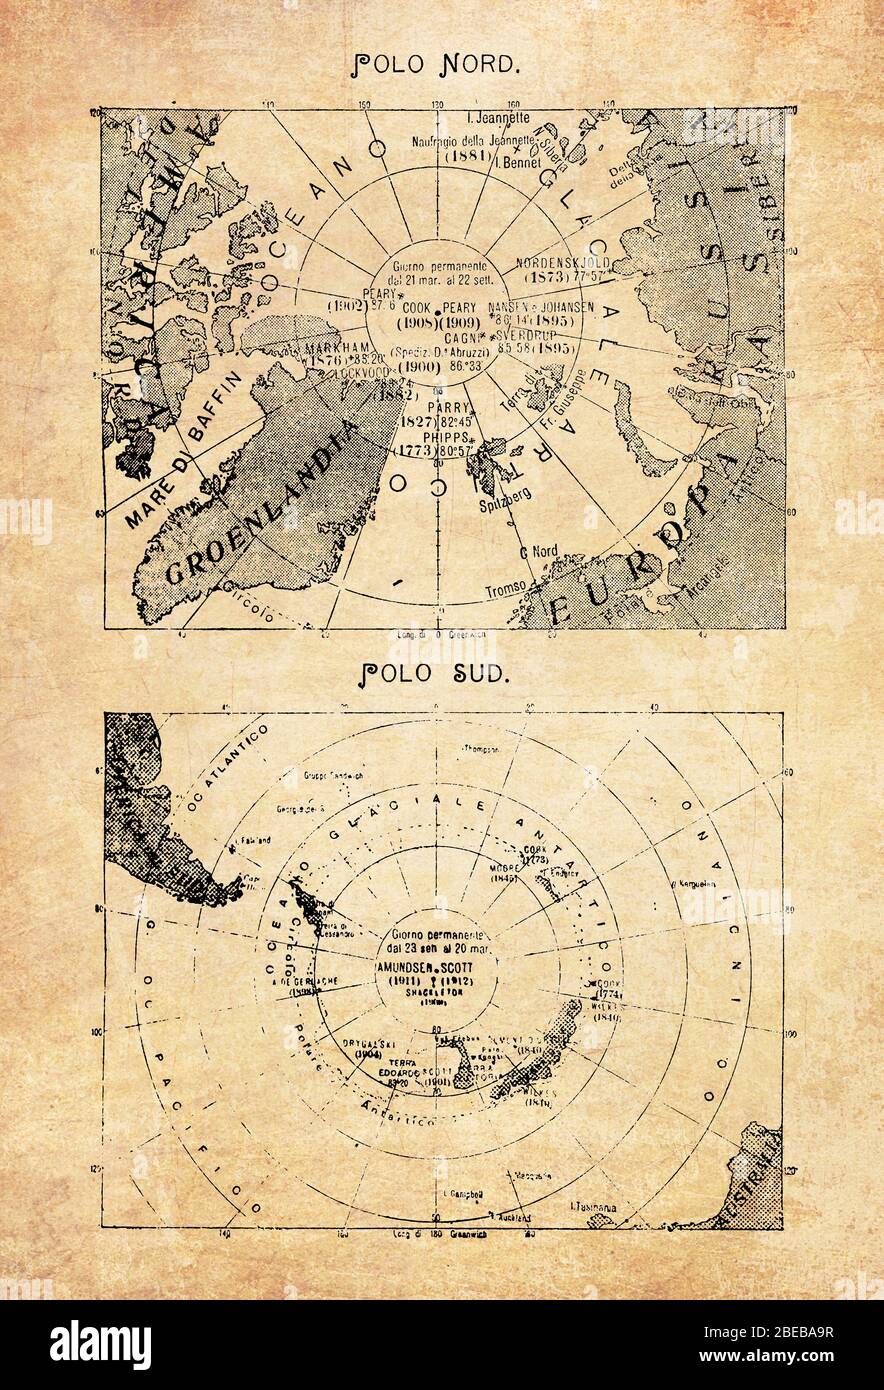 Alte Karten Des Nordpols In Der Mitte Des Arktischen Ozeans Und Des Sudpols Mit Dem Kontinent Der Antarktis Mit Geographischen Italienischen Namen Und Beschreibungen Stockfotografie Alamy